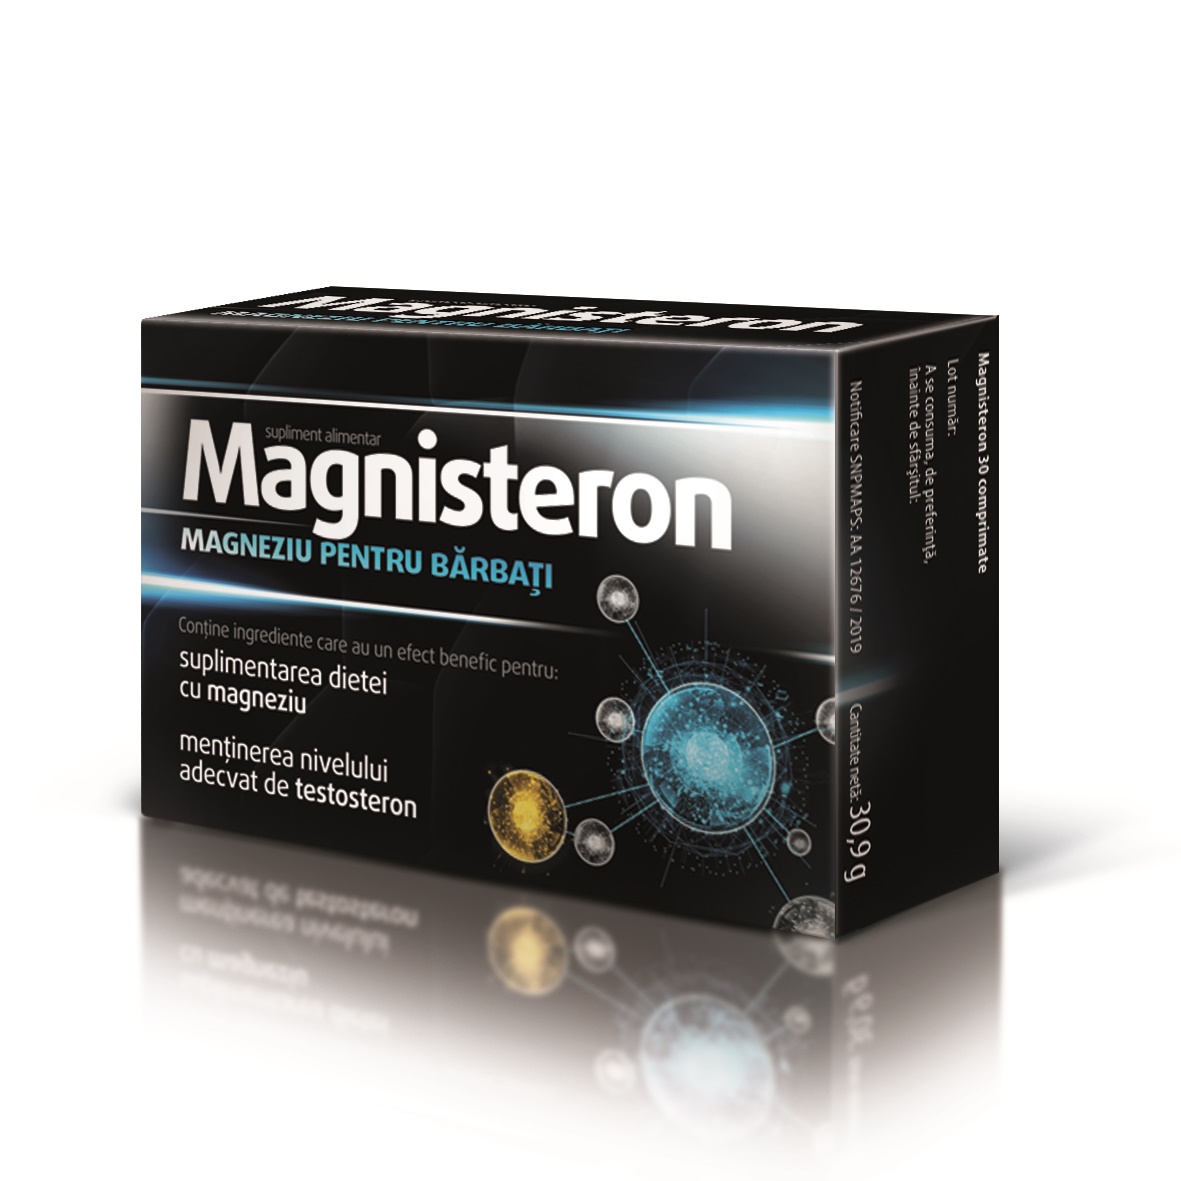 Magnisteron magneziu pentru barbati 30 comprimate